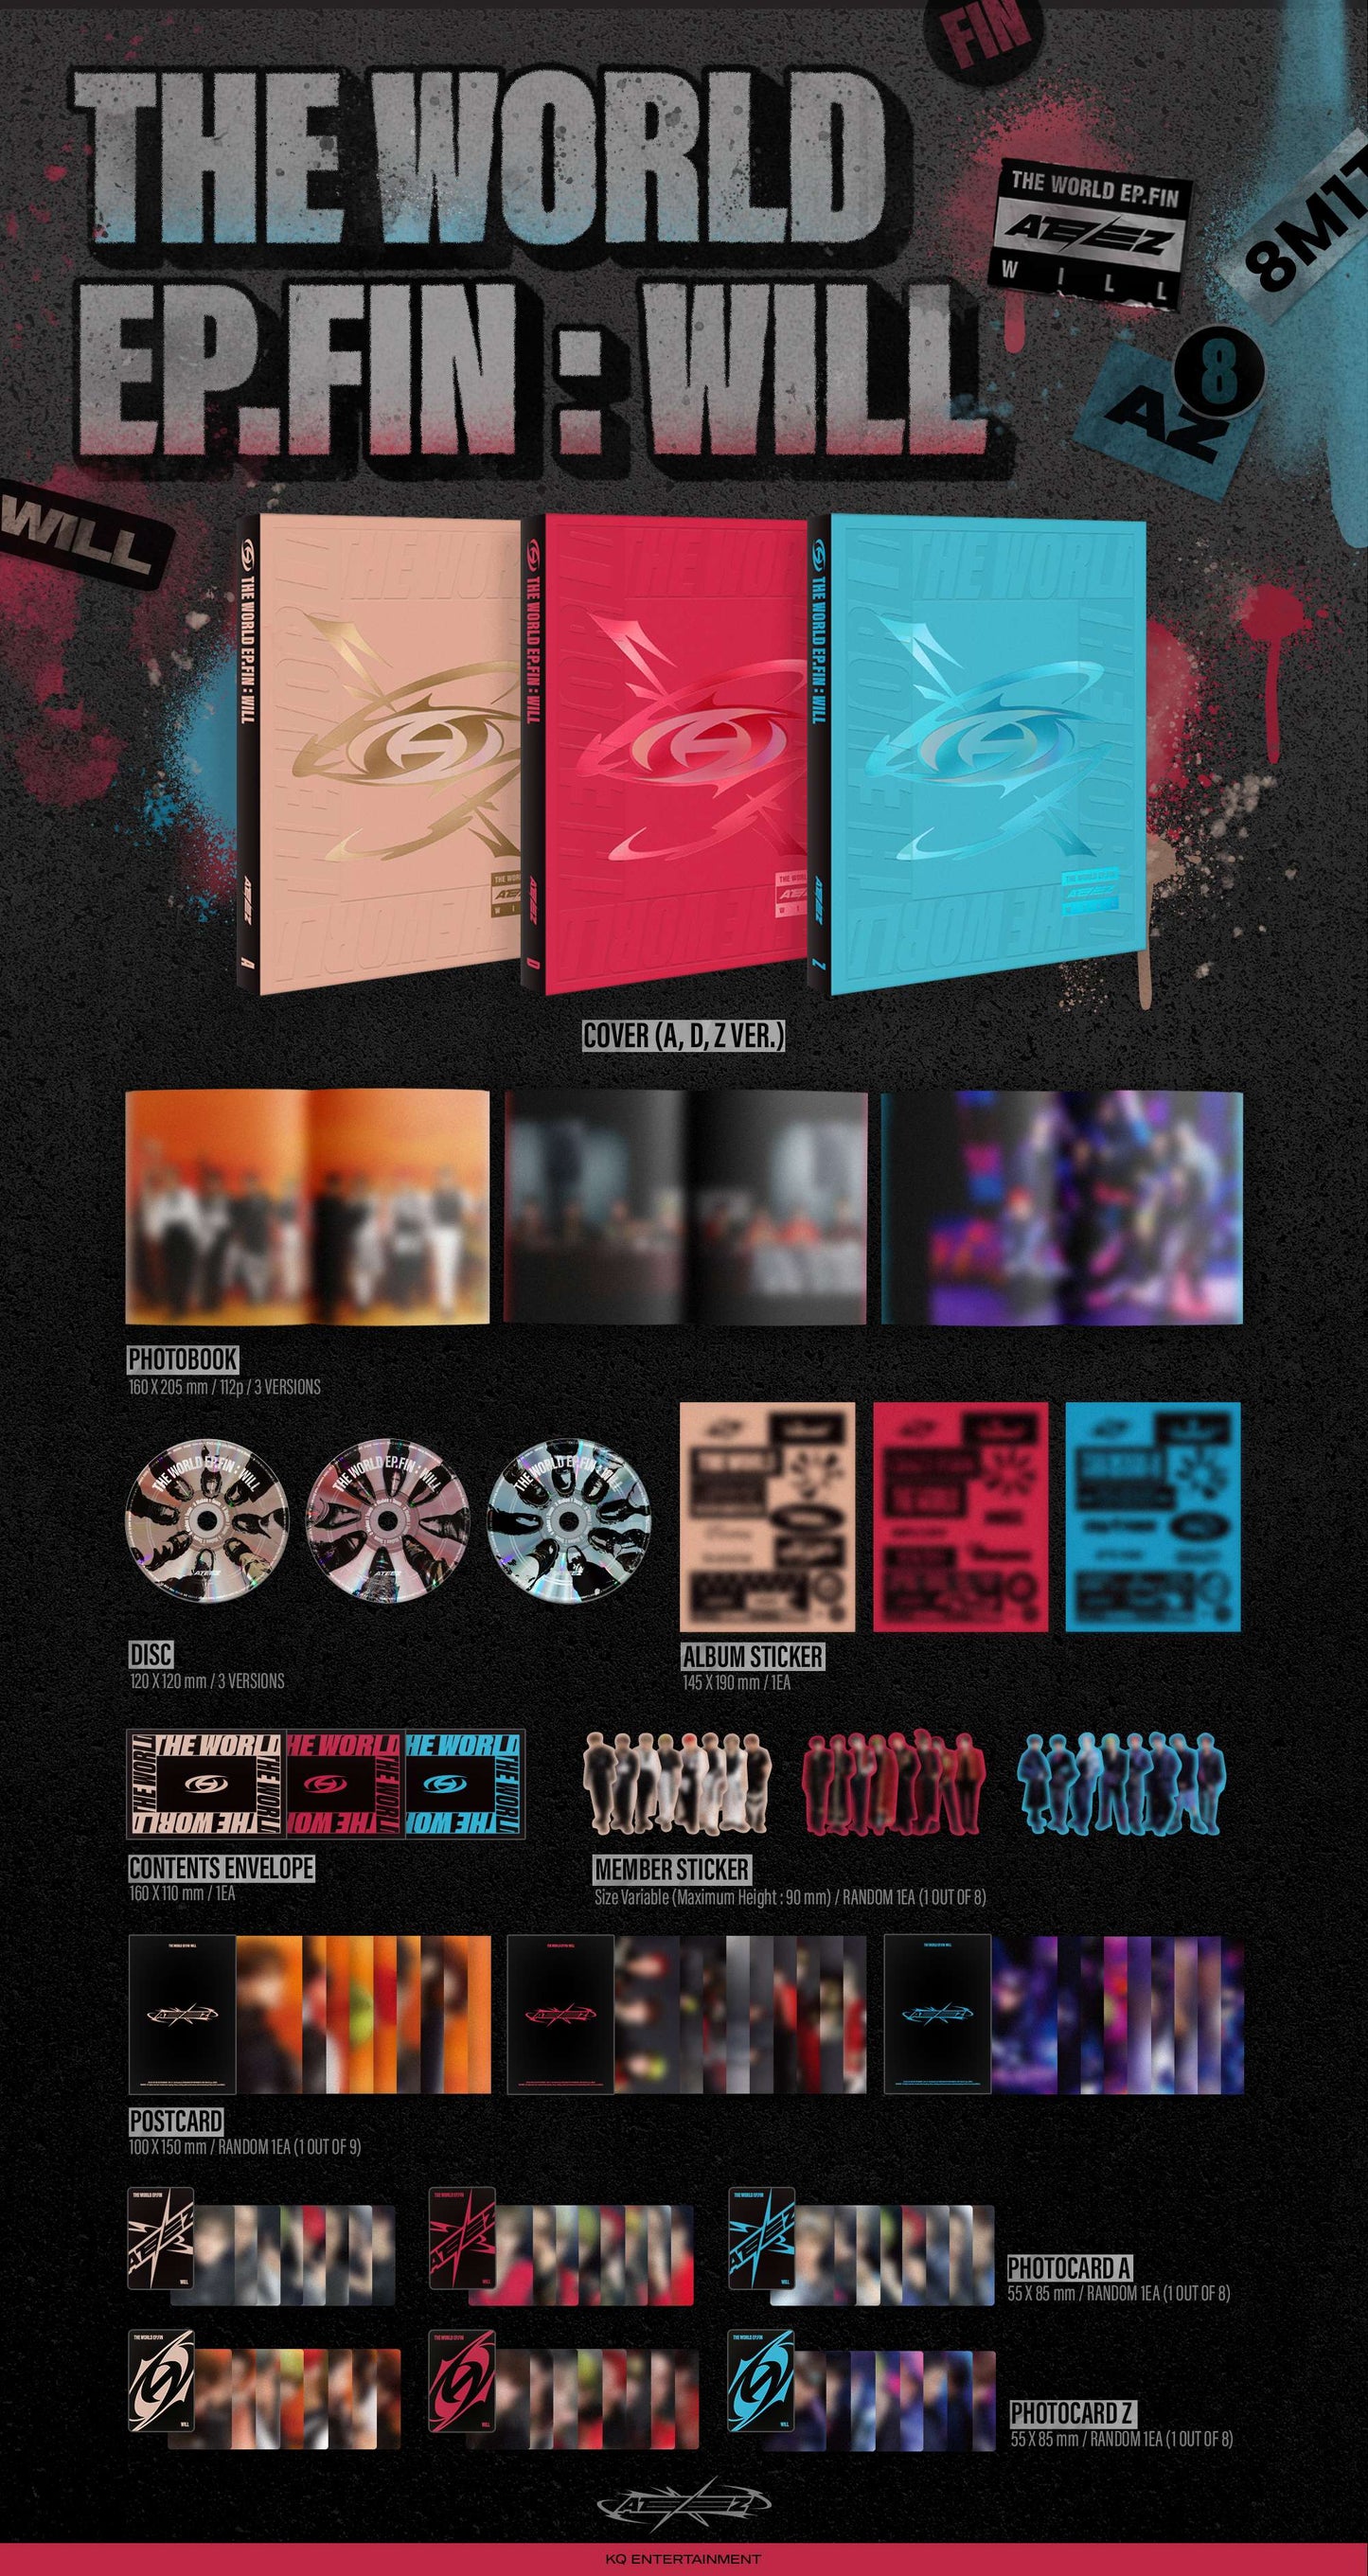 [PRE-ORDER] ATEEZ 에이티즈 - 10th Mini-Album 'THE WORLD EP.FIN : WILL' (Korean Version) + Apple Music POB